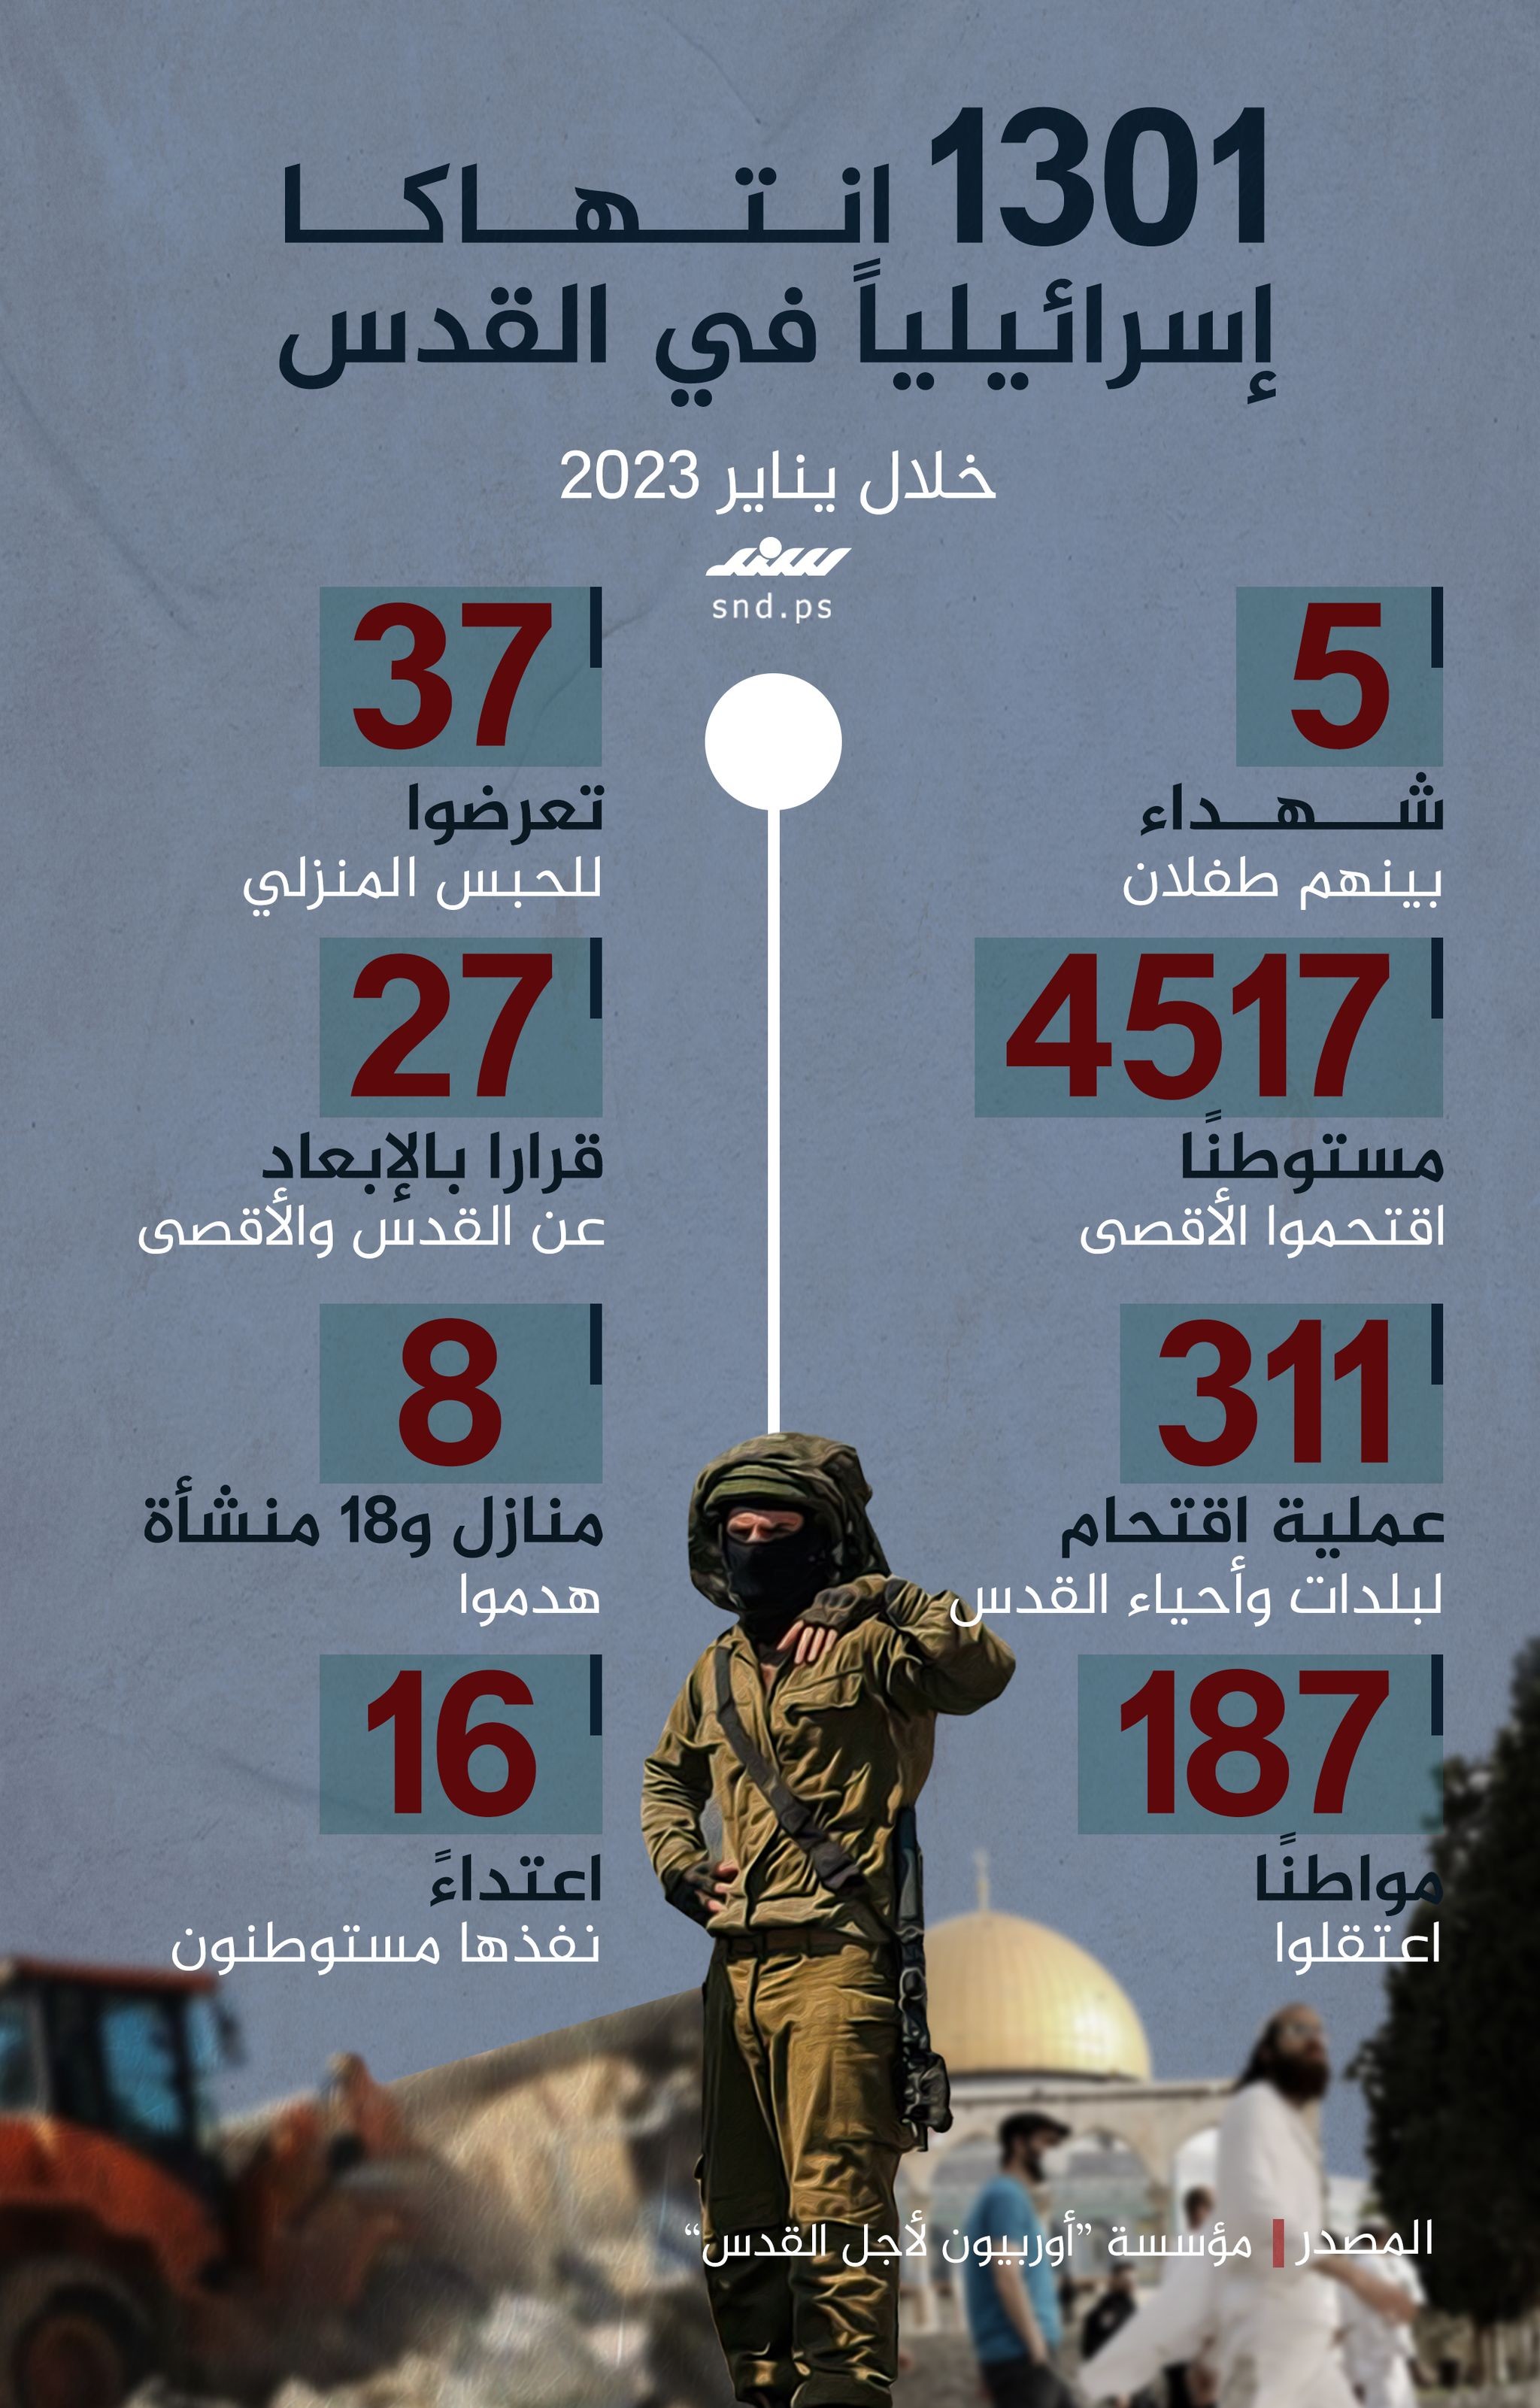 انتهاكات الاحتلال في القدس خلال يناير.jpg